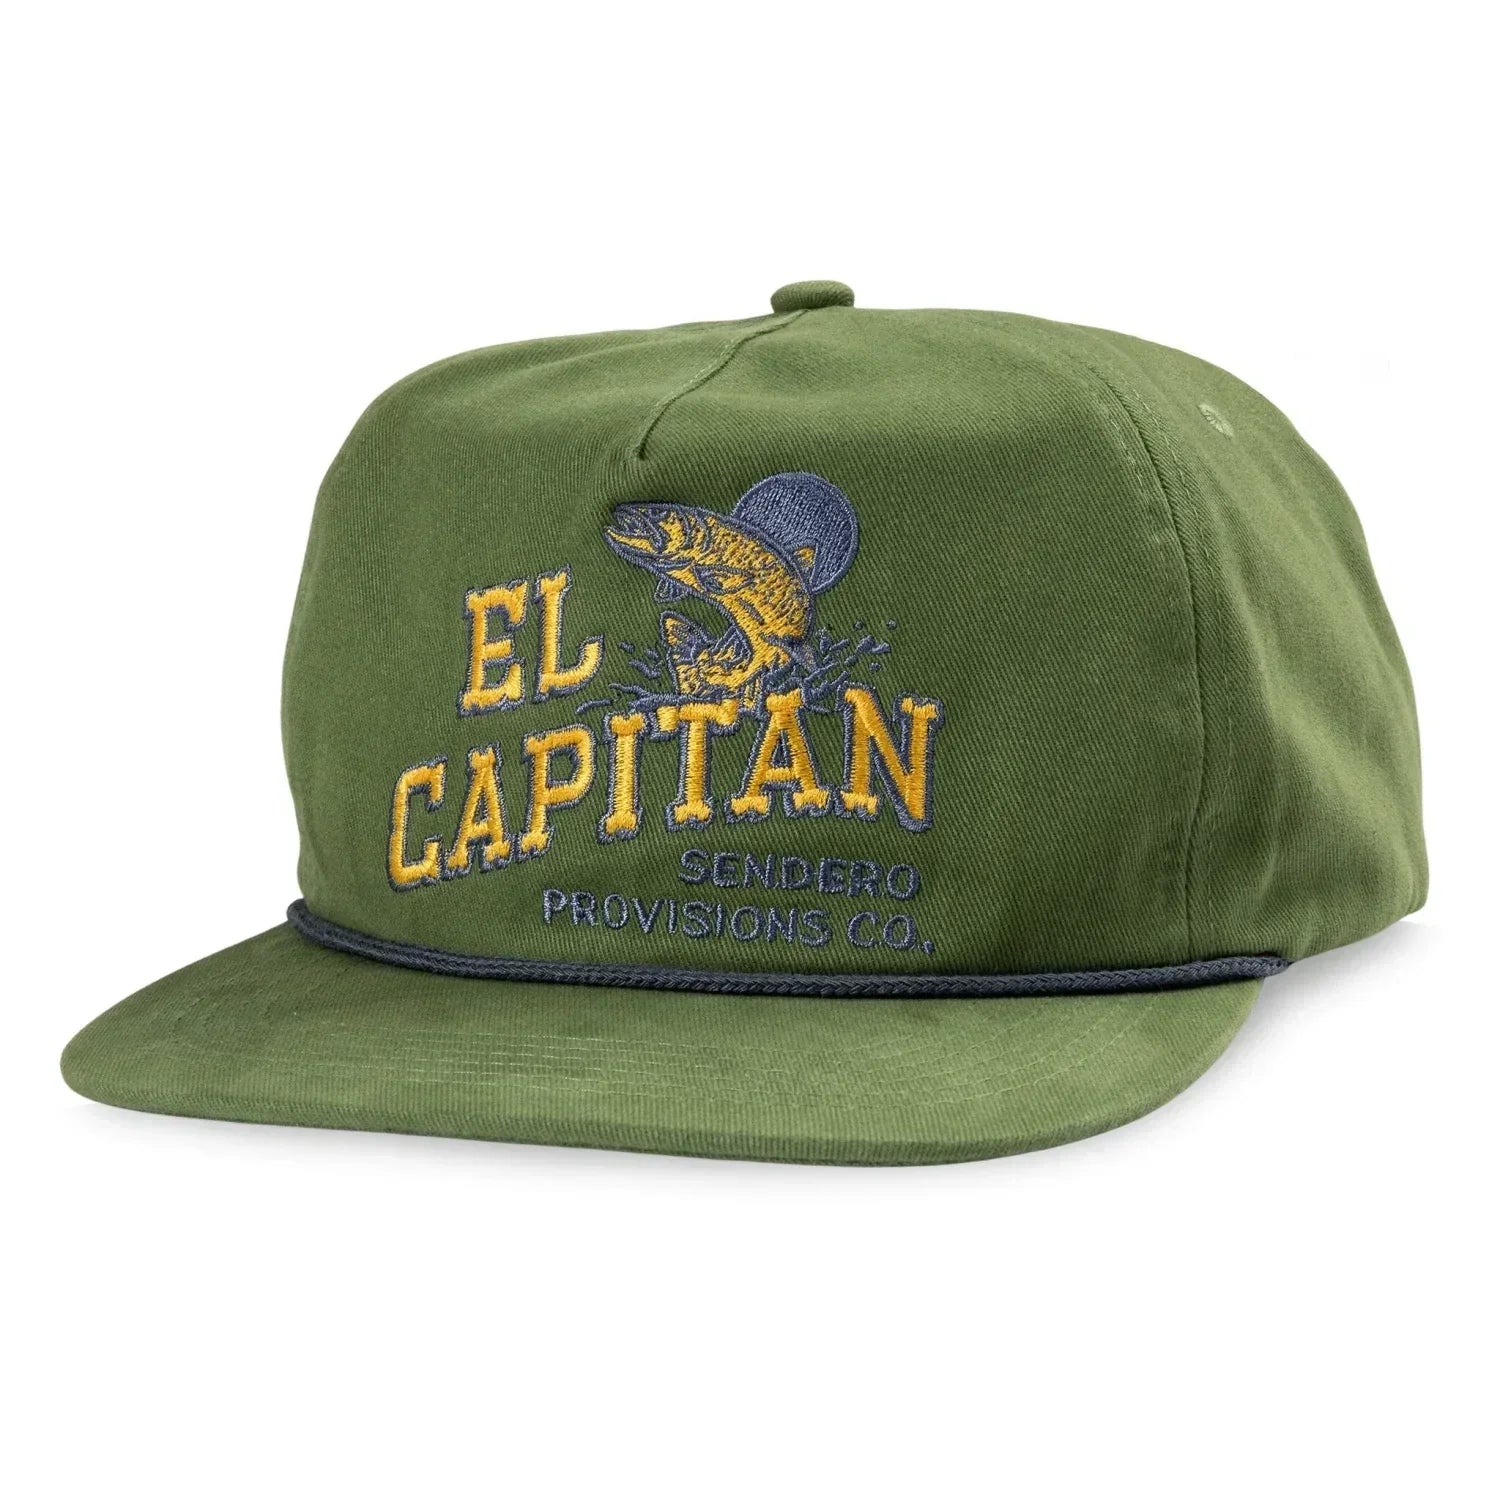 Sendero Provisions Co. 11. HATS - HATS BILLED - HATS BILLED El Capitan Hat